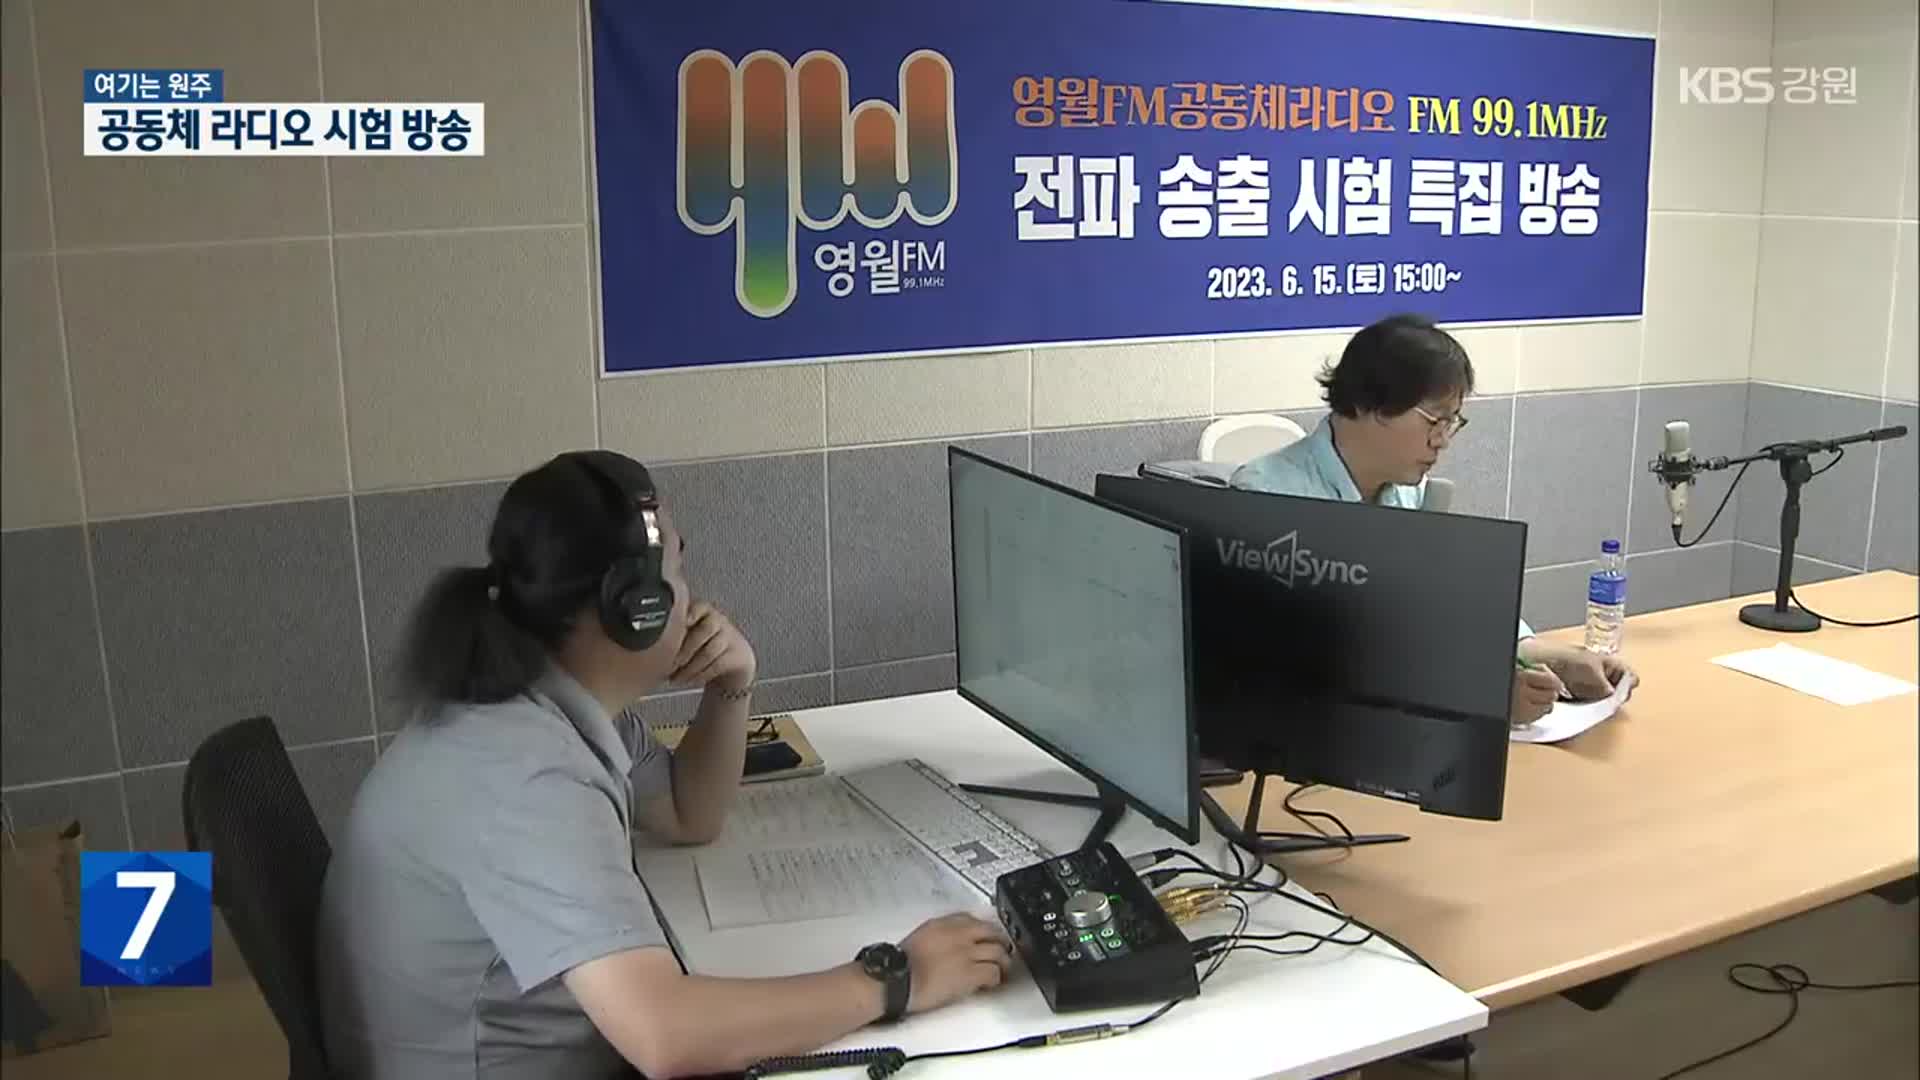 [여기는 원주] ‘영월FM 공동체라디오’ 첫 시험방송…지역 구심점으로